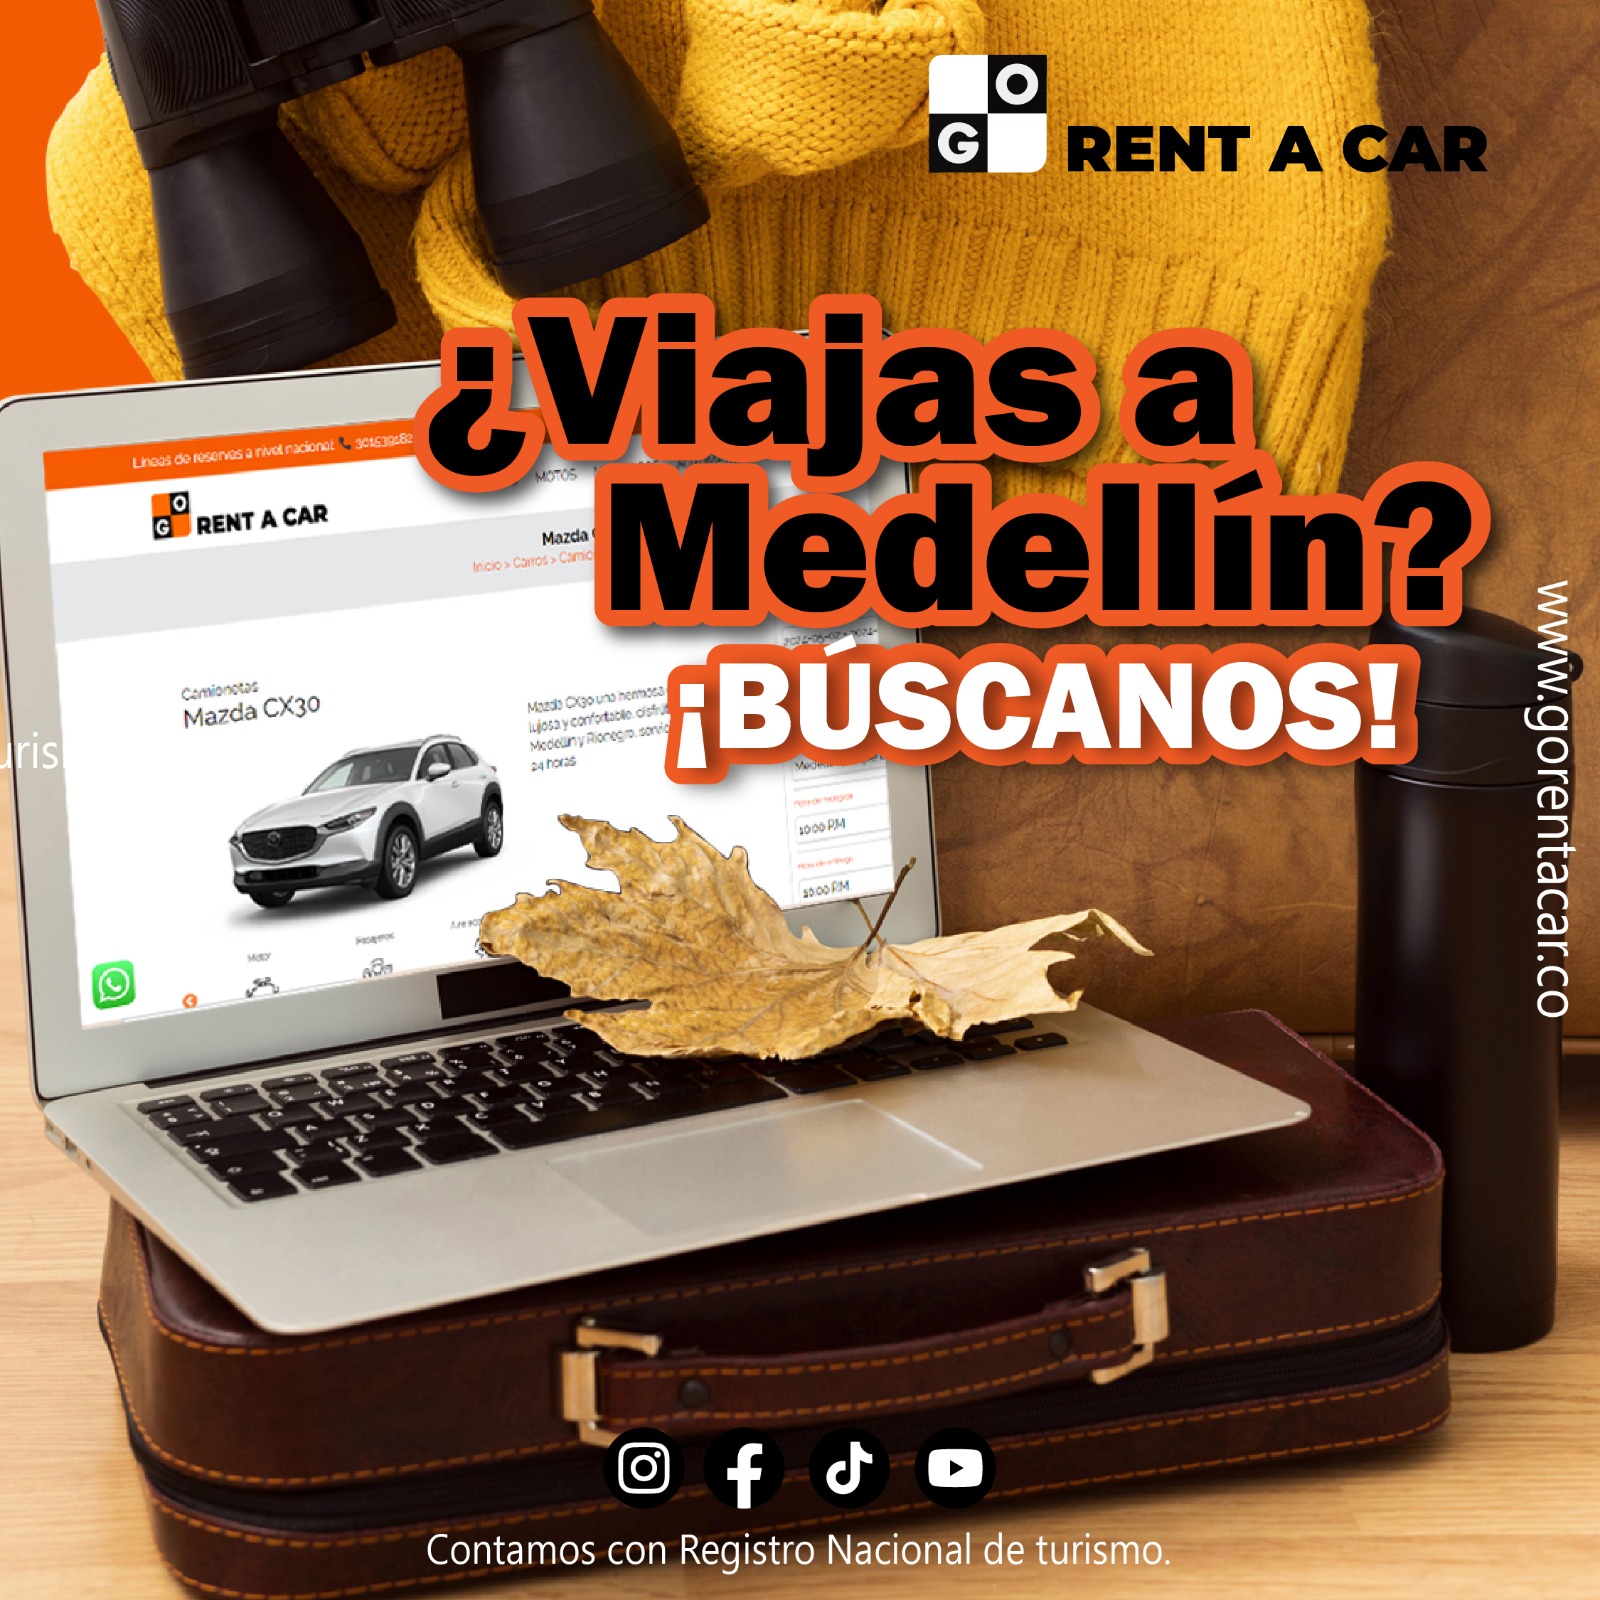 Medellín Rent a car